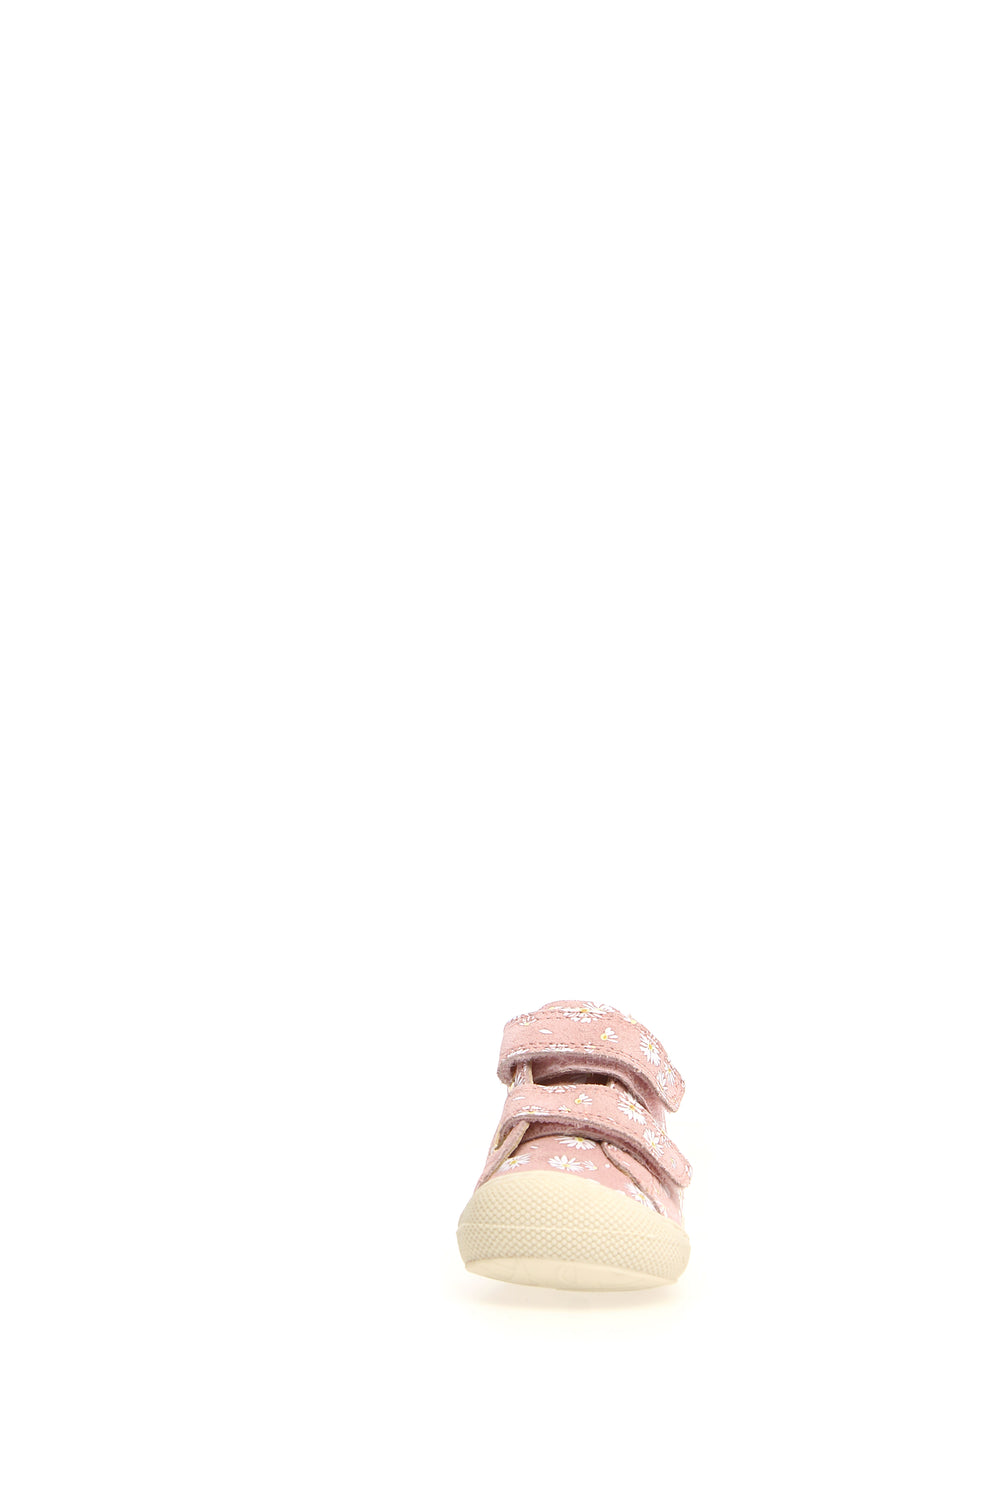 Cocoon VL - Pink Daisies Suede||Cocoon VL - Suède rose avec marguerites